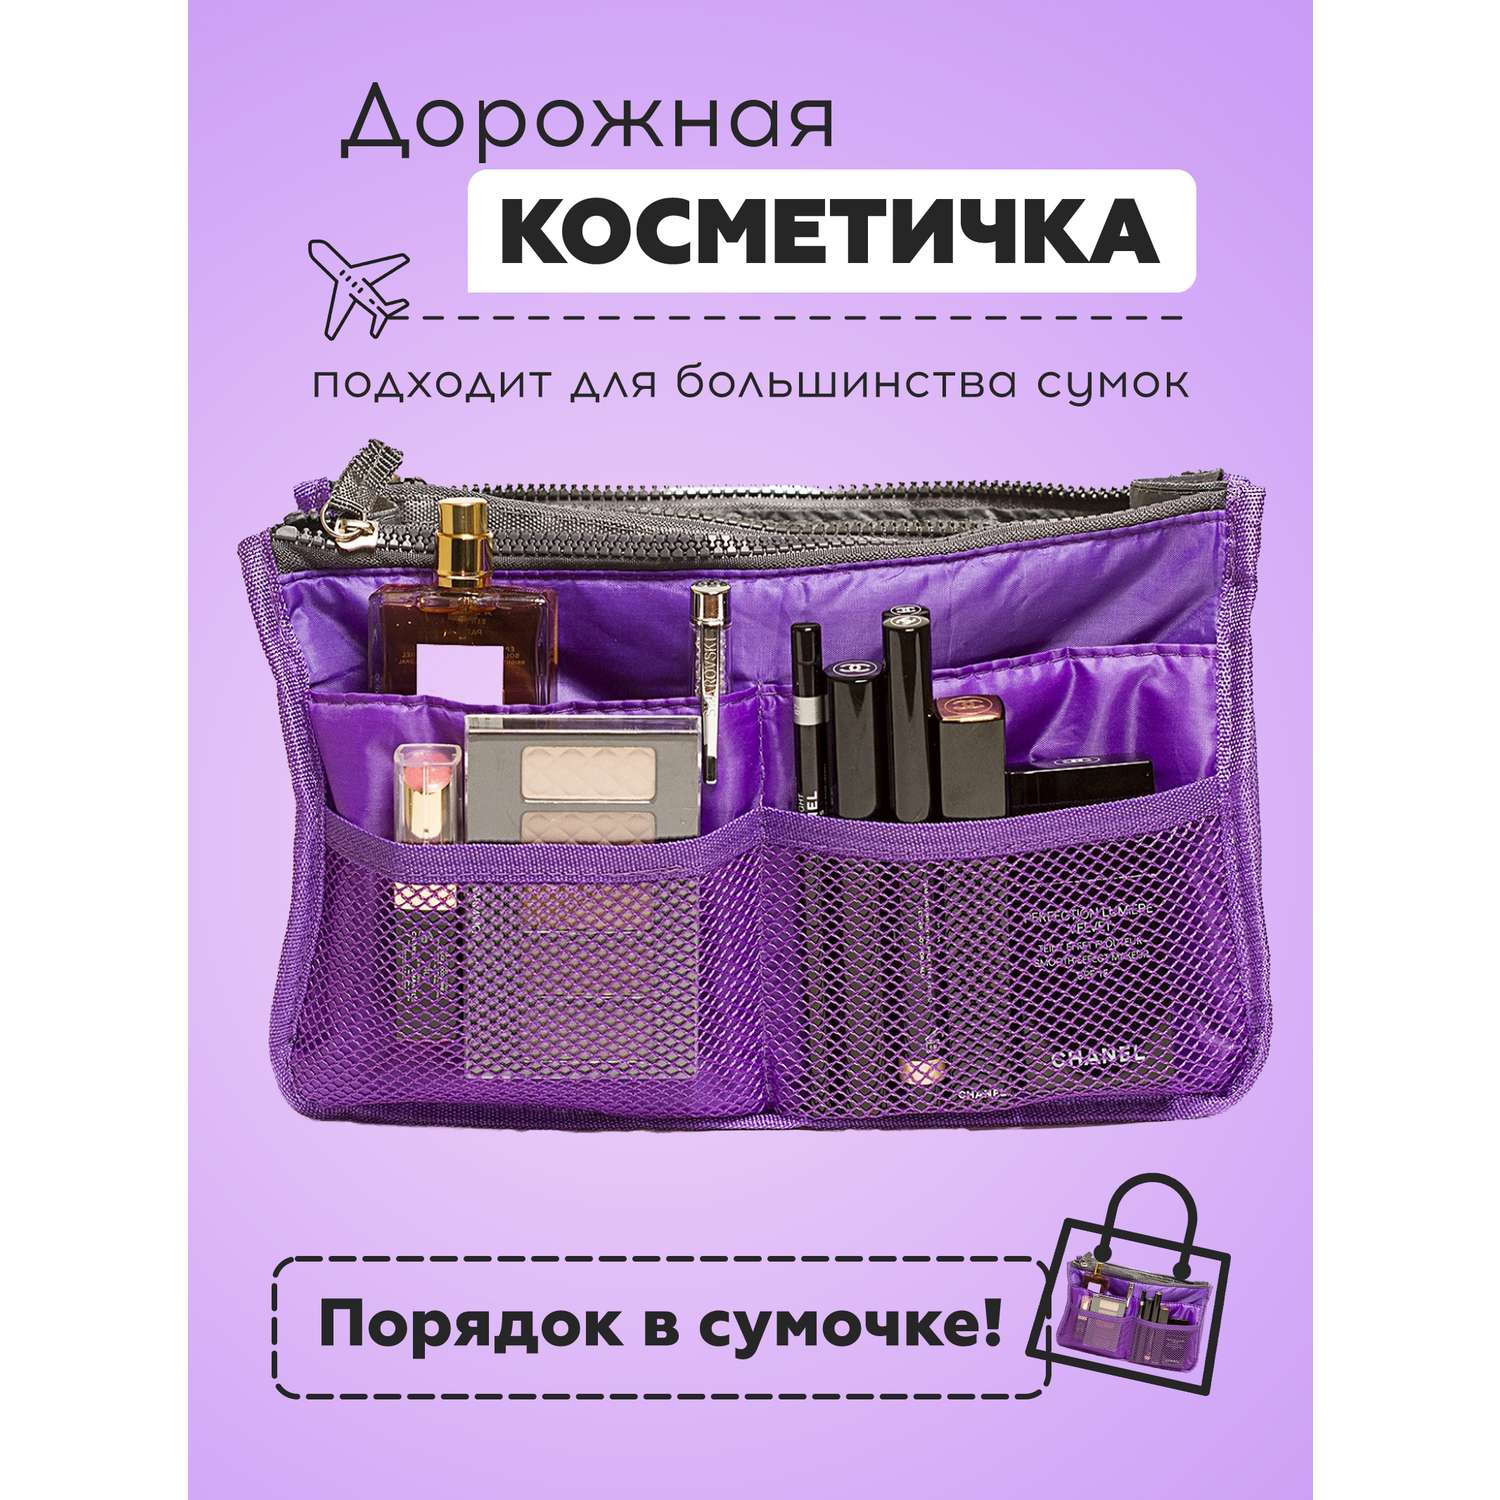 Органайзер Homsu для сумки фиолетовый - фото 2